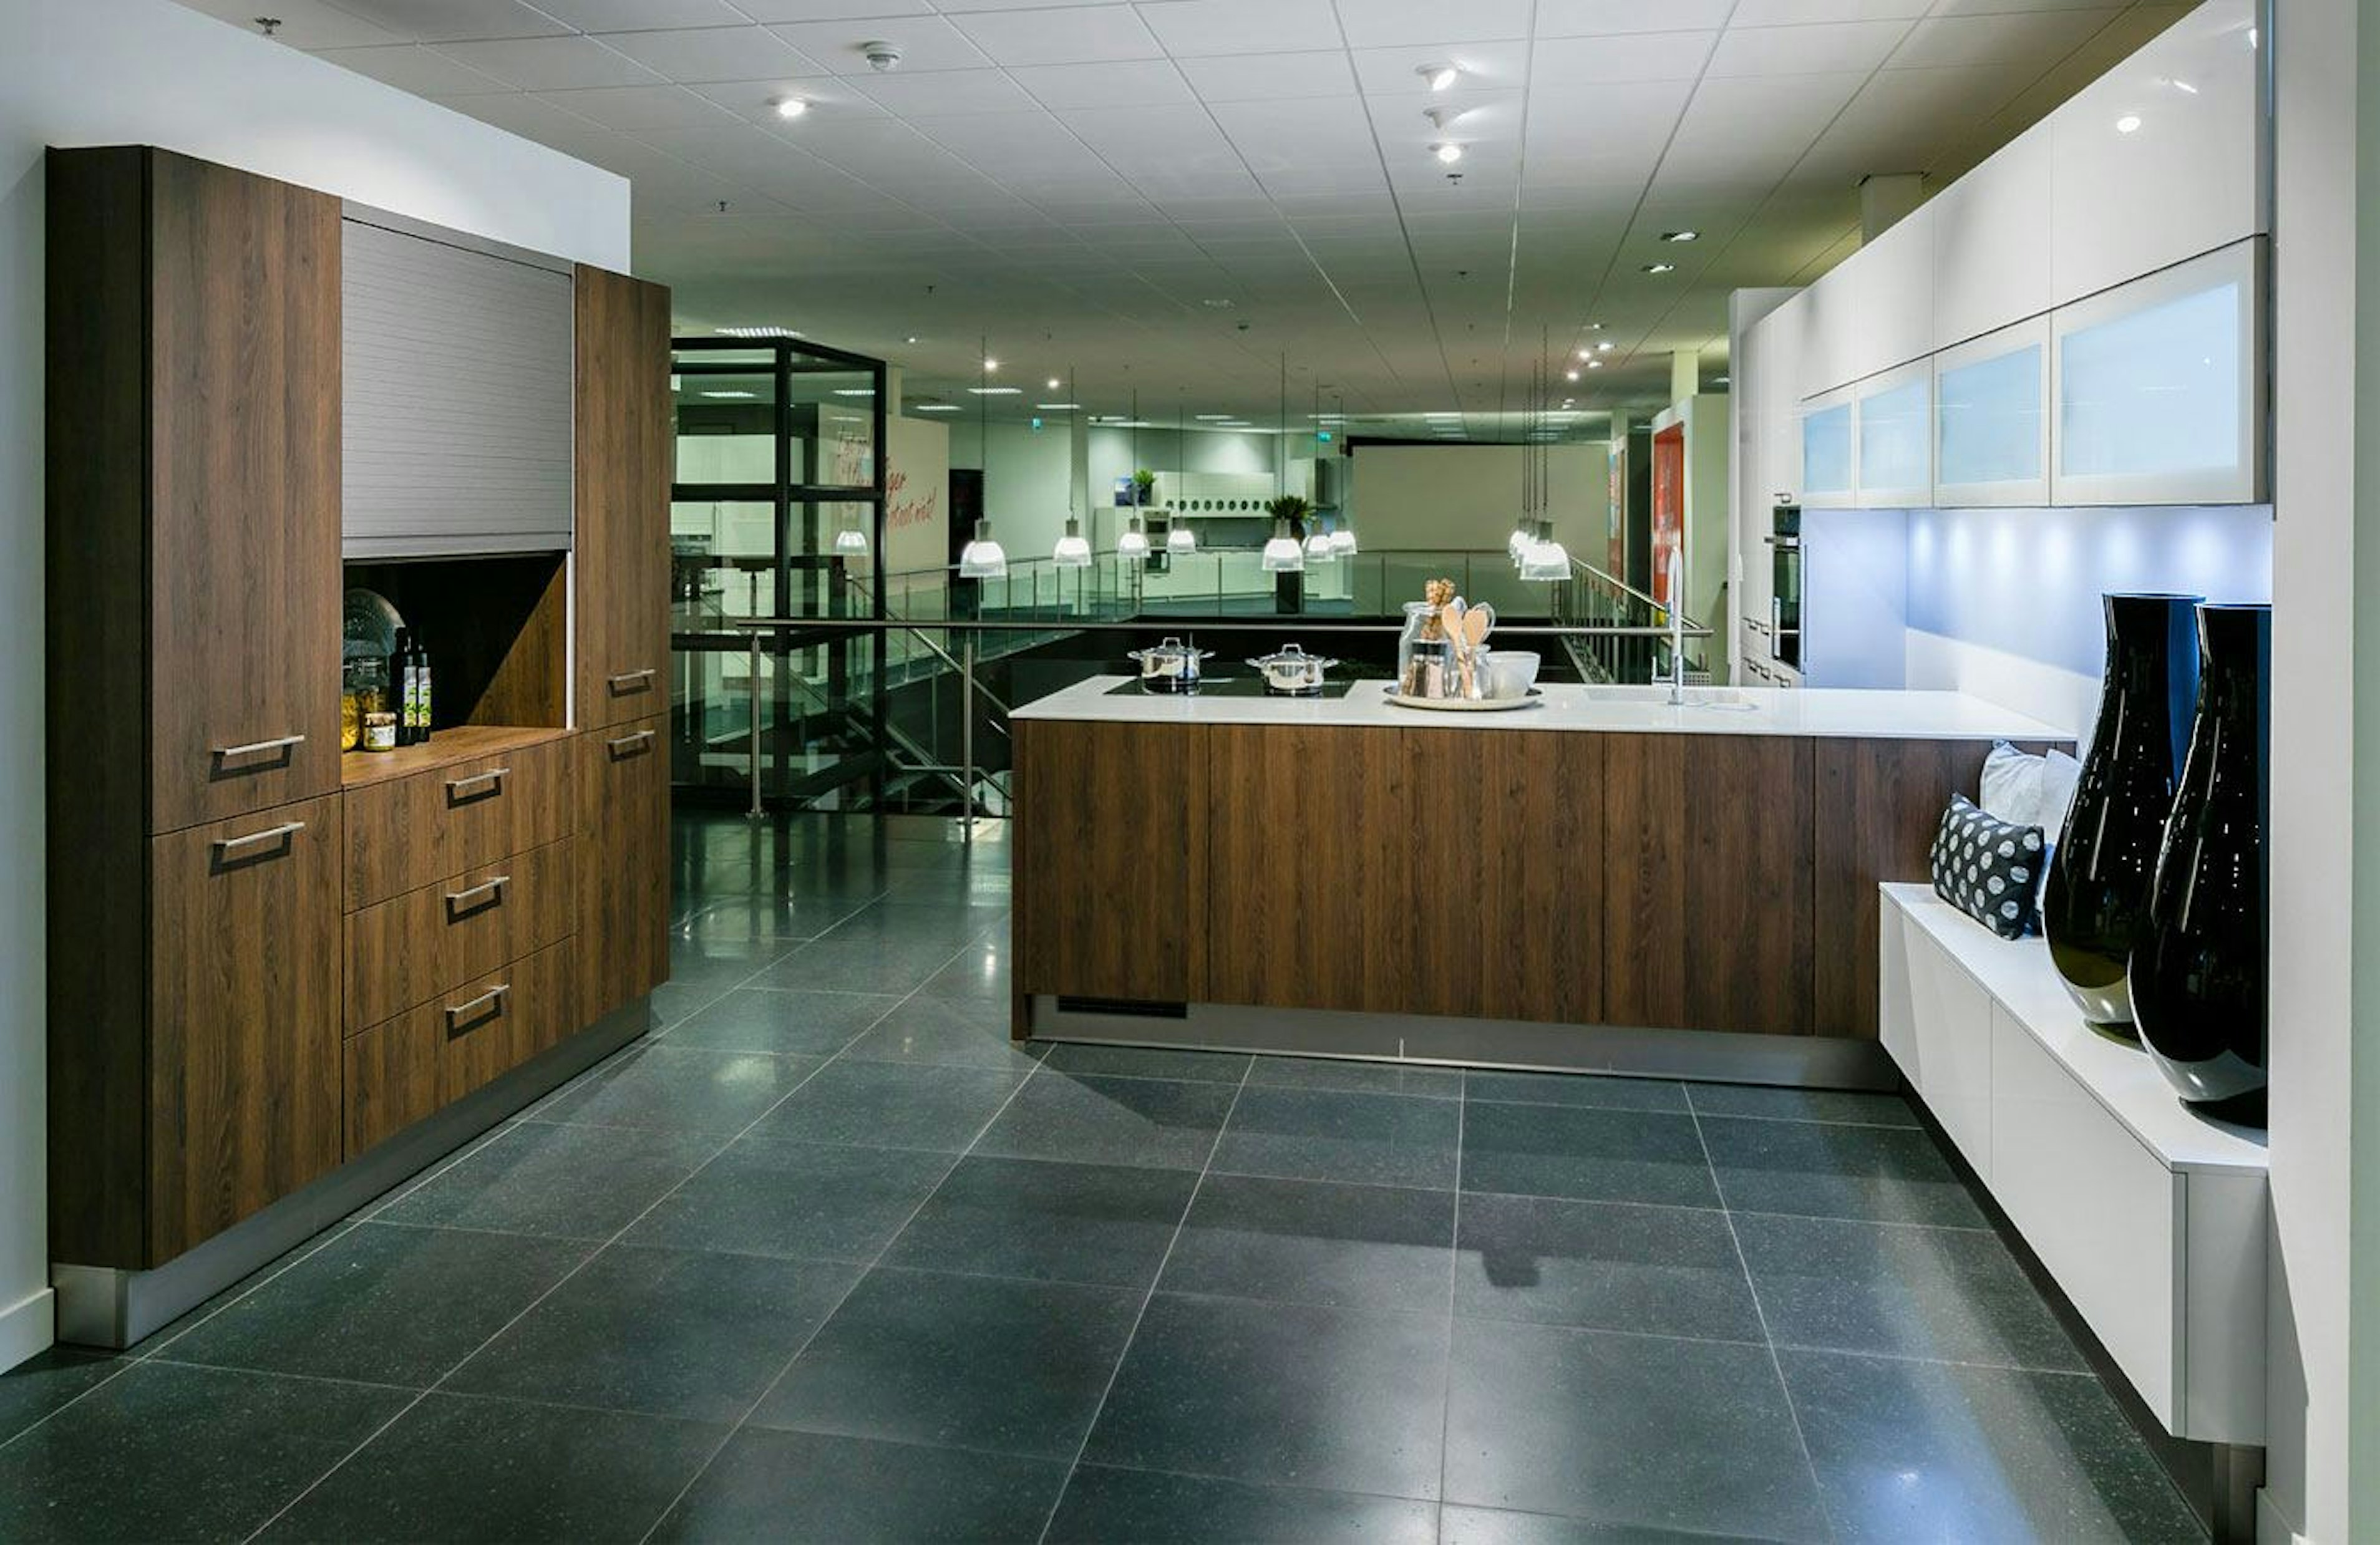 De design keuken bevat een kookplaat met geïntegreerde afzuiging.